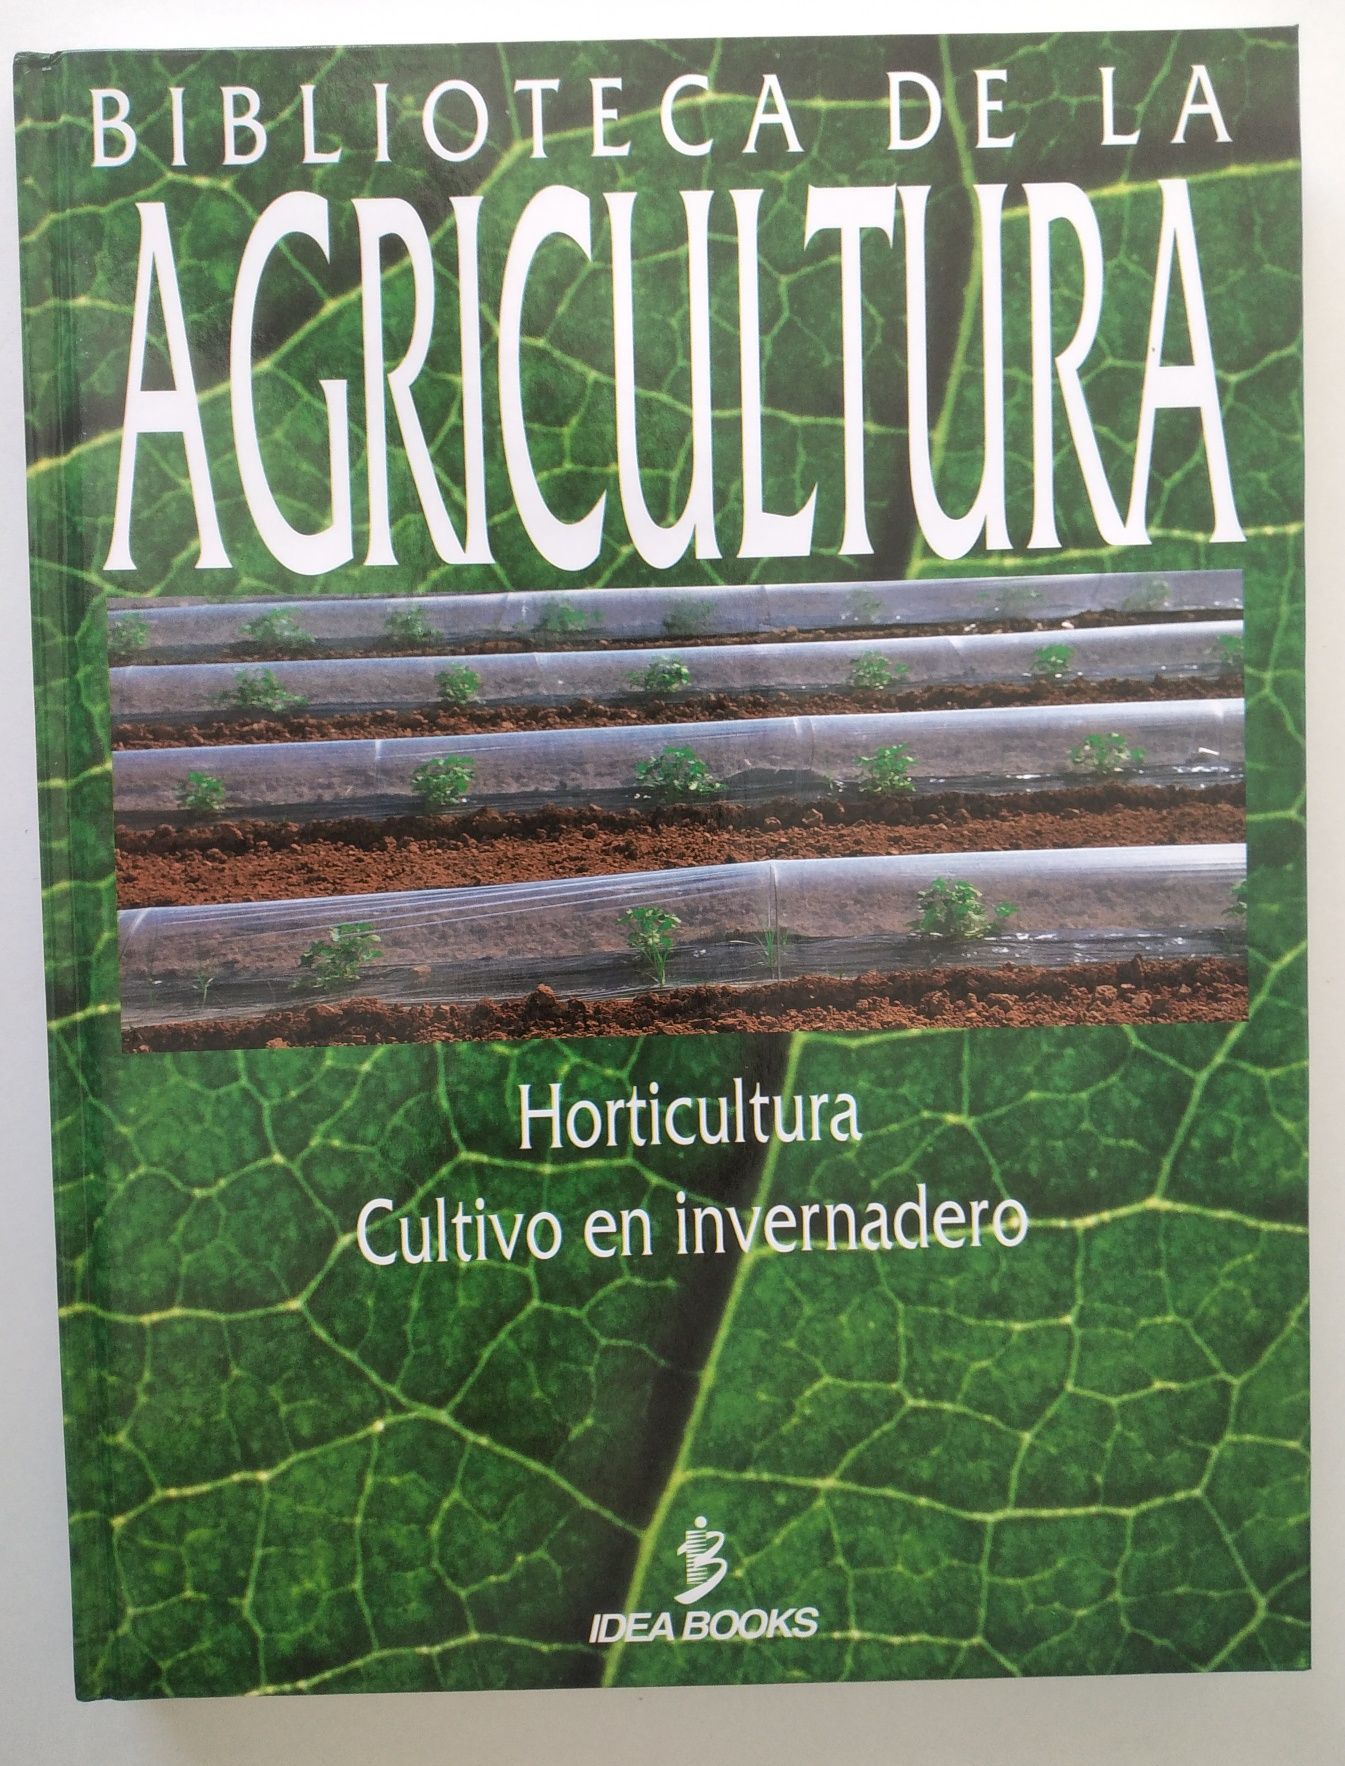 Biblioteca de la agricultura  - 3 livros novos nas caixas originais